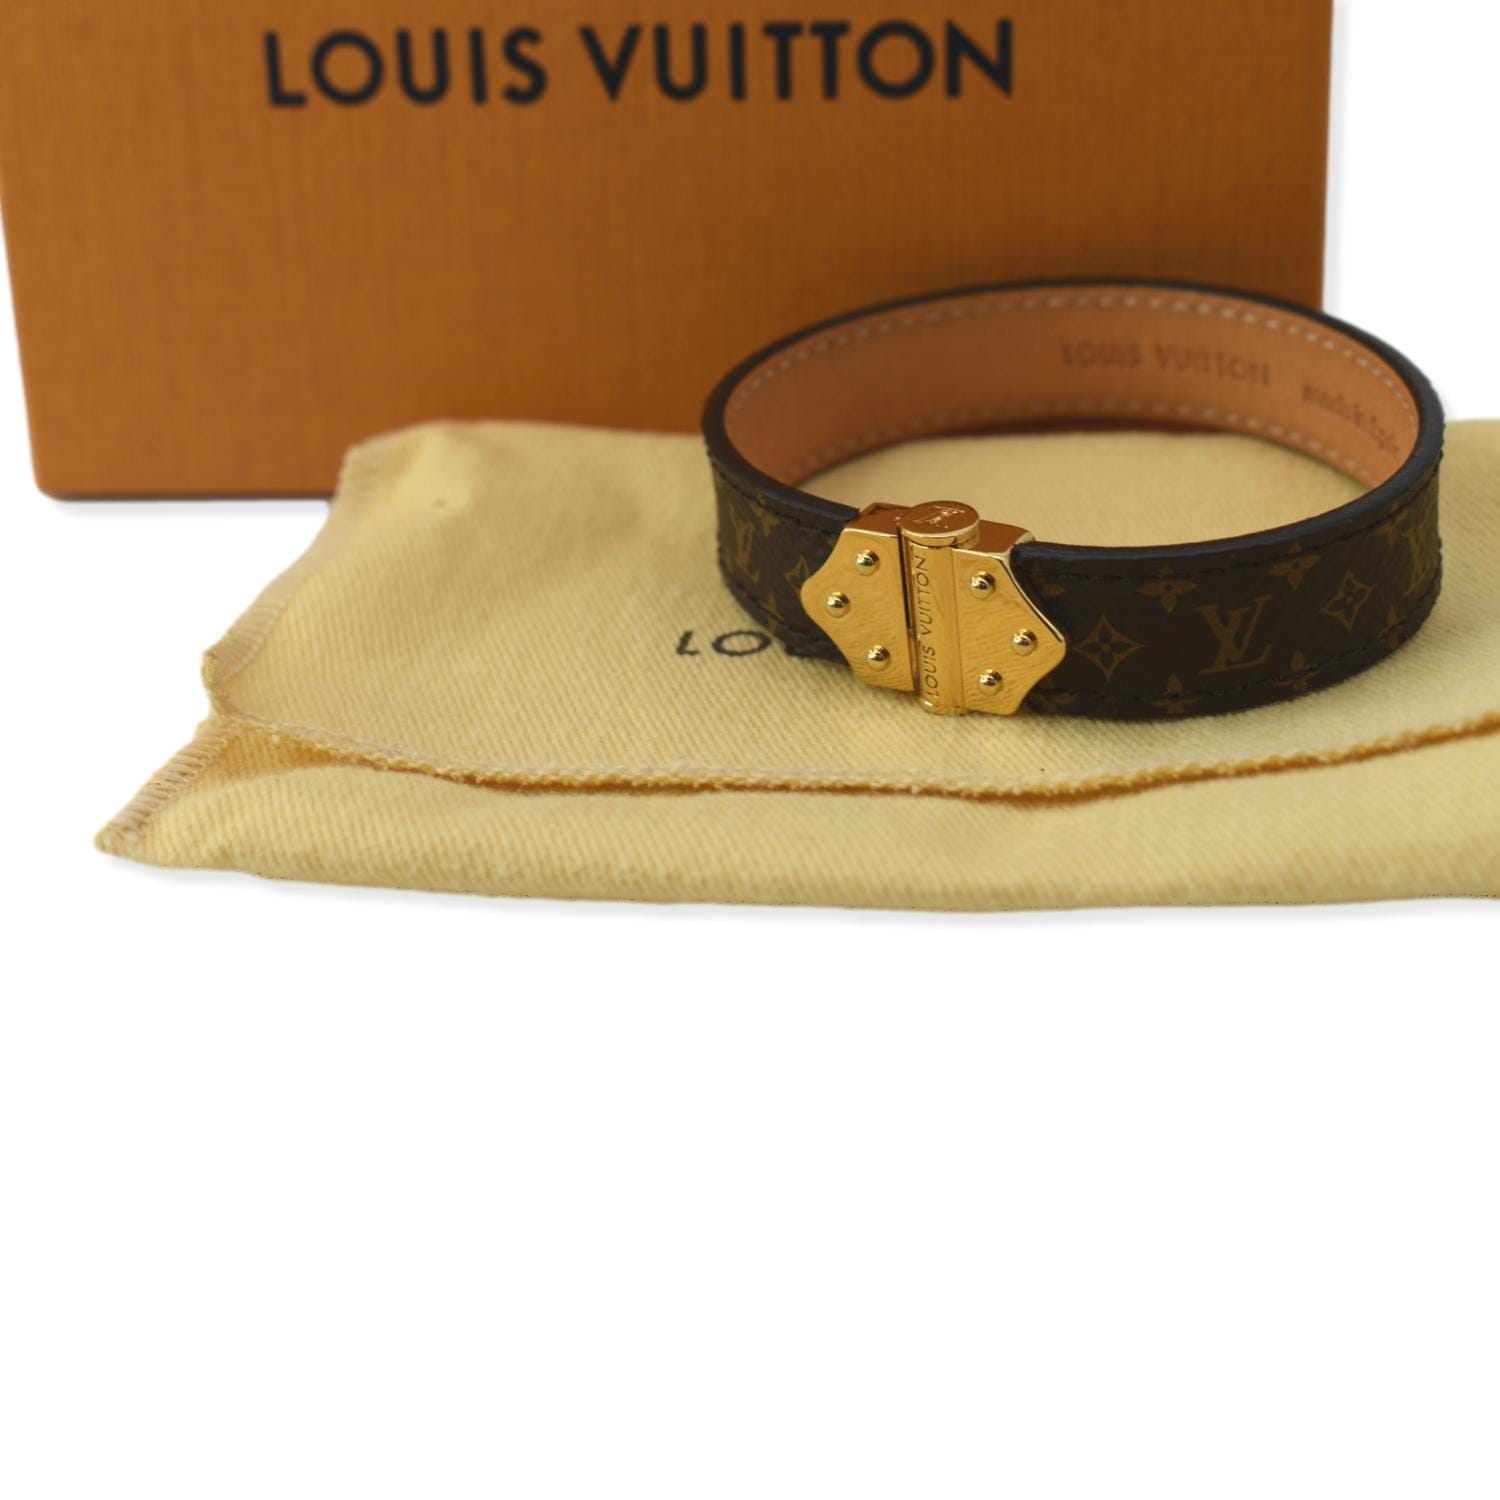 Bracelets Louis vuitton Marrón de en Lona - 21155670